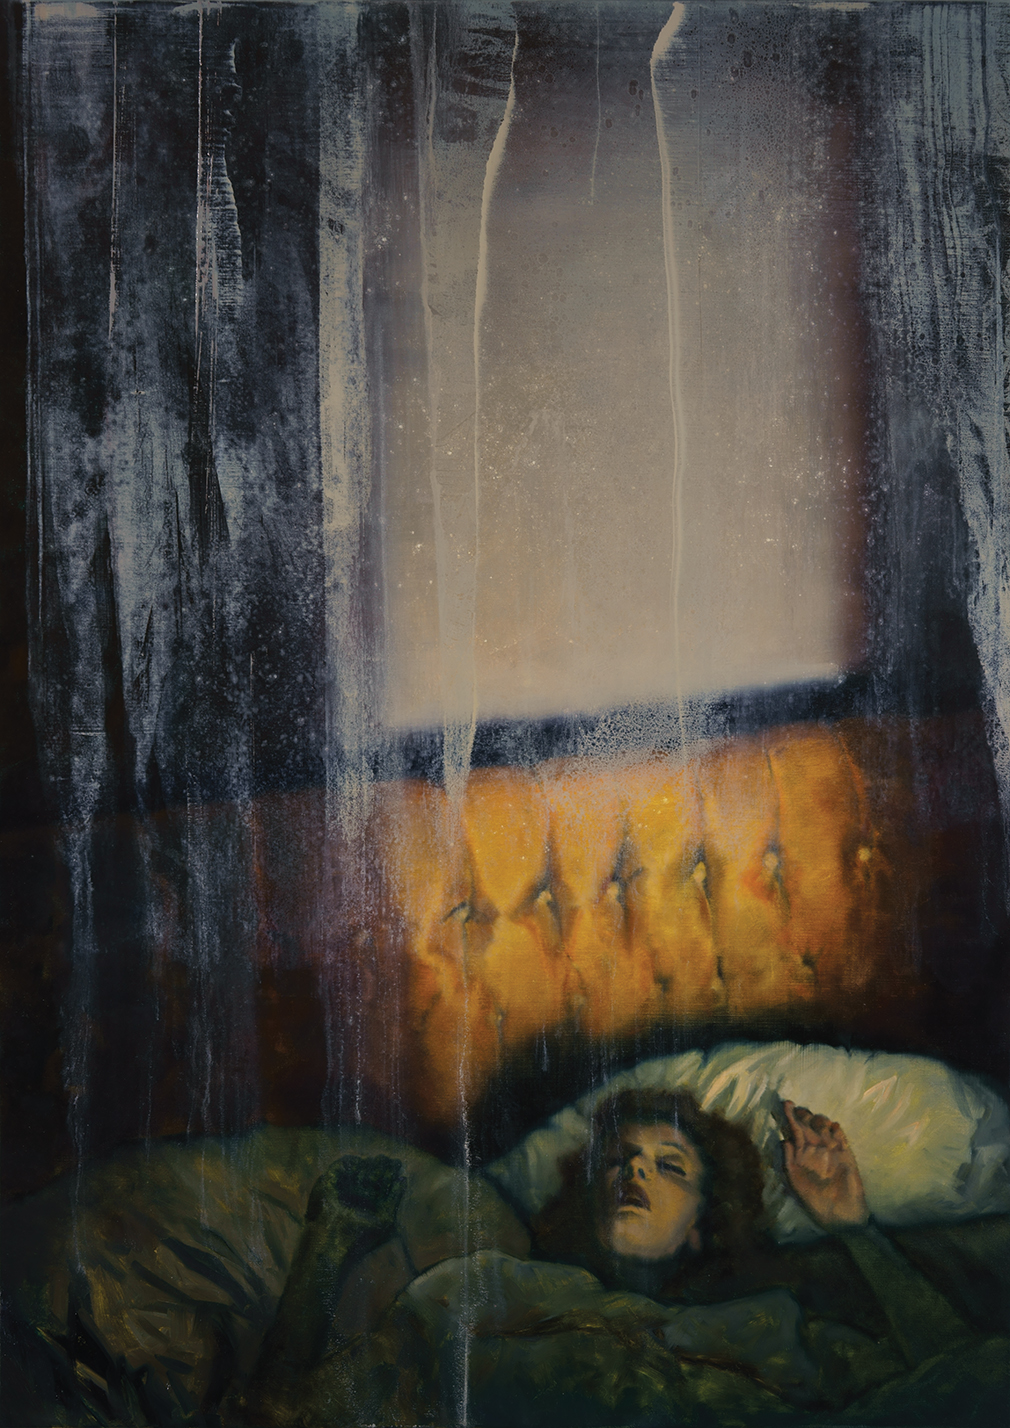 sleeper, oil on canvas. 140x100cm. 2021-22